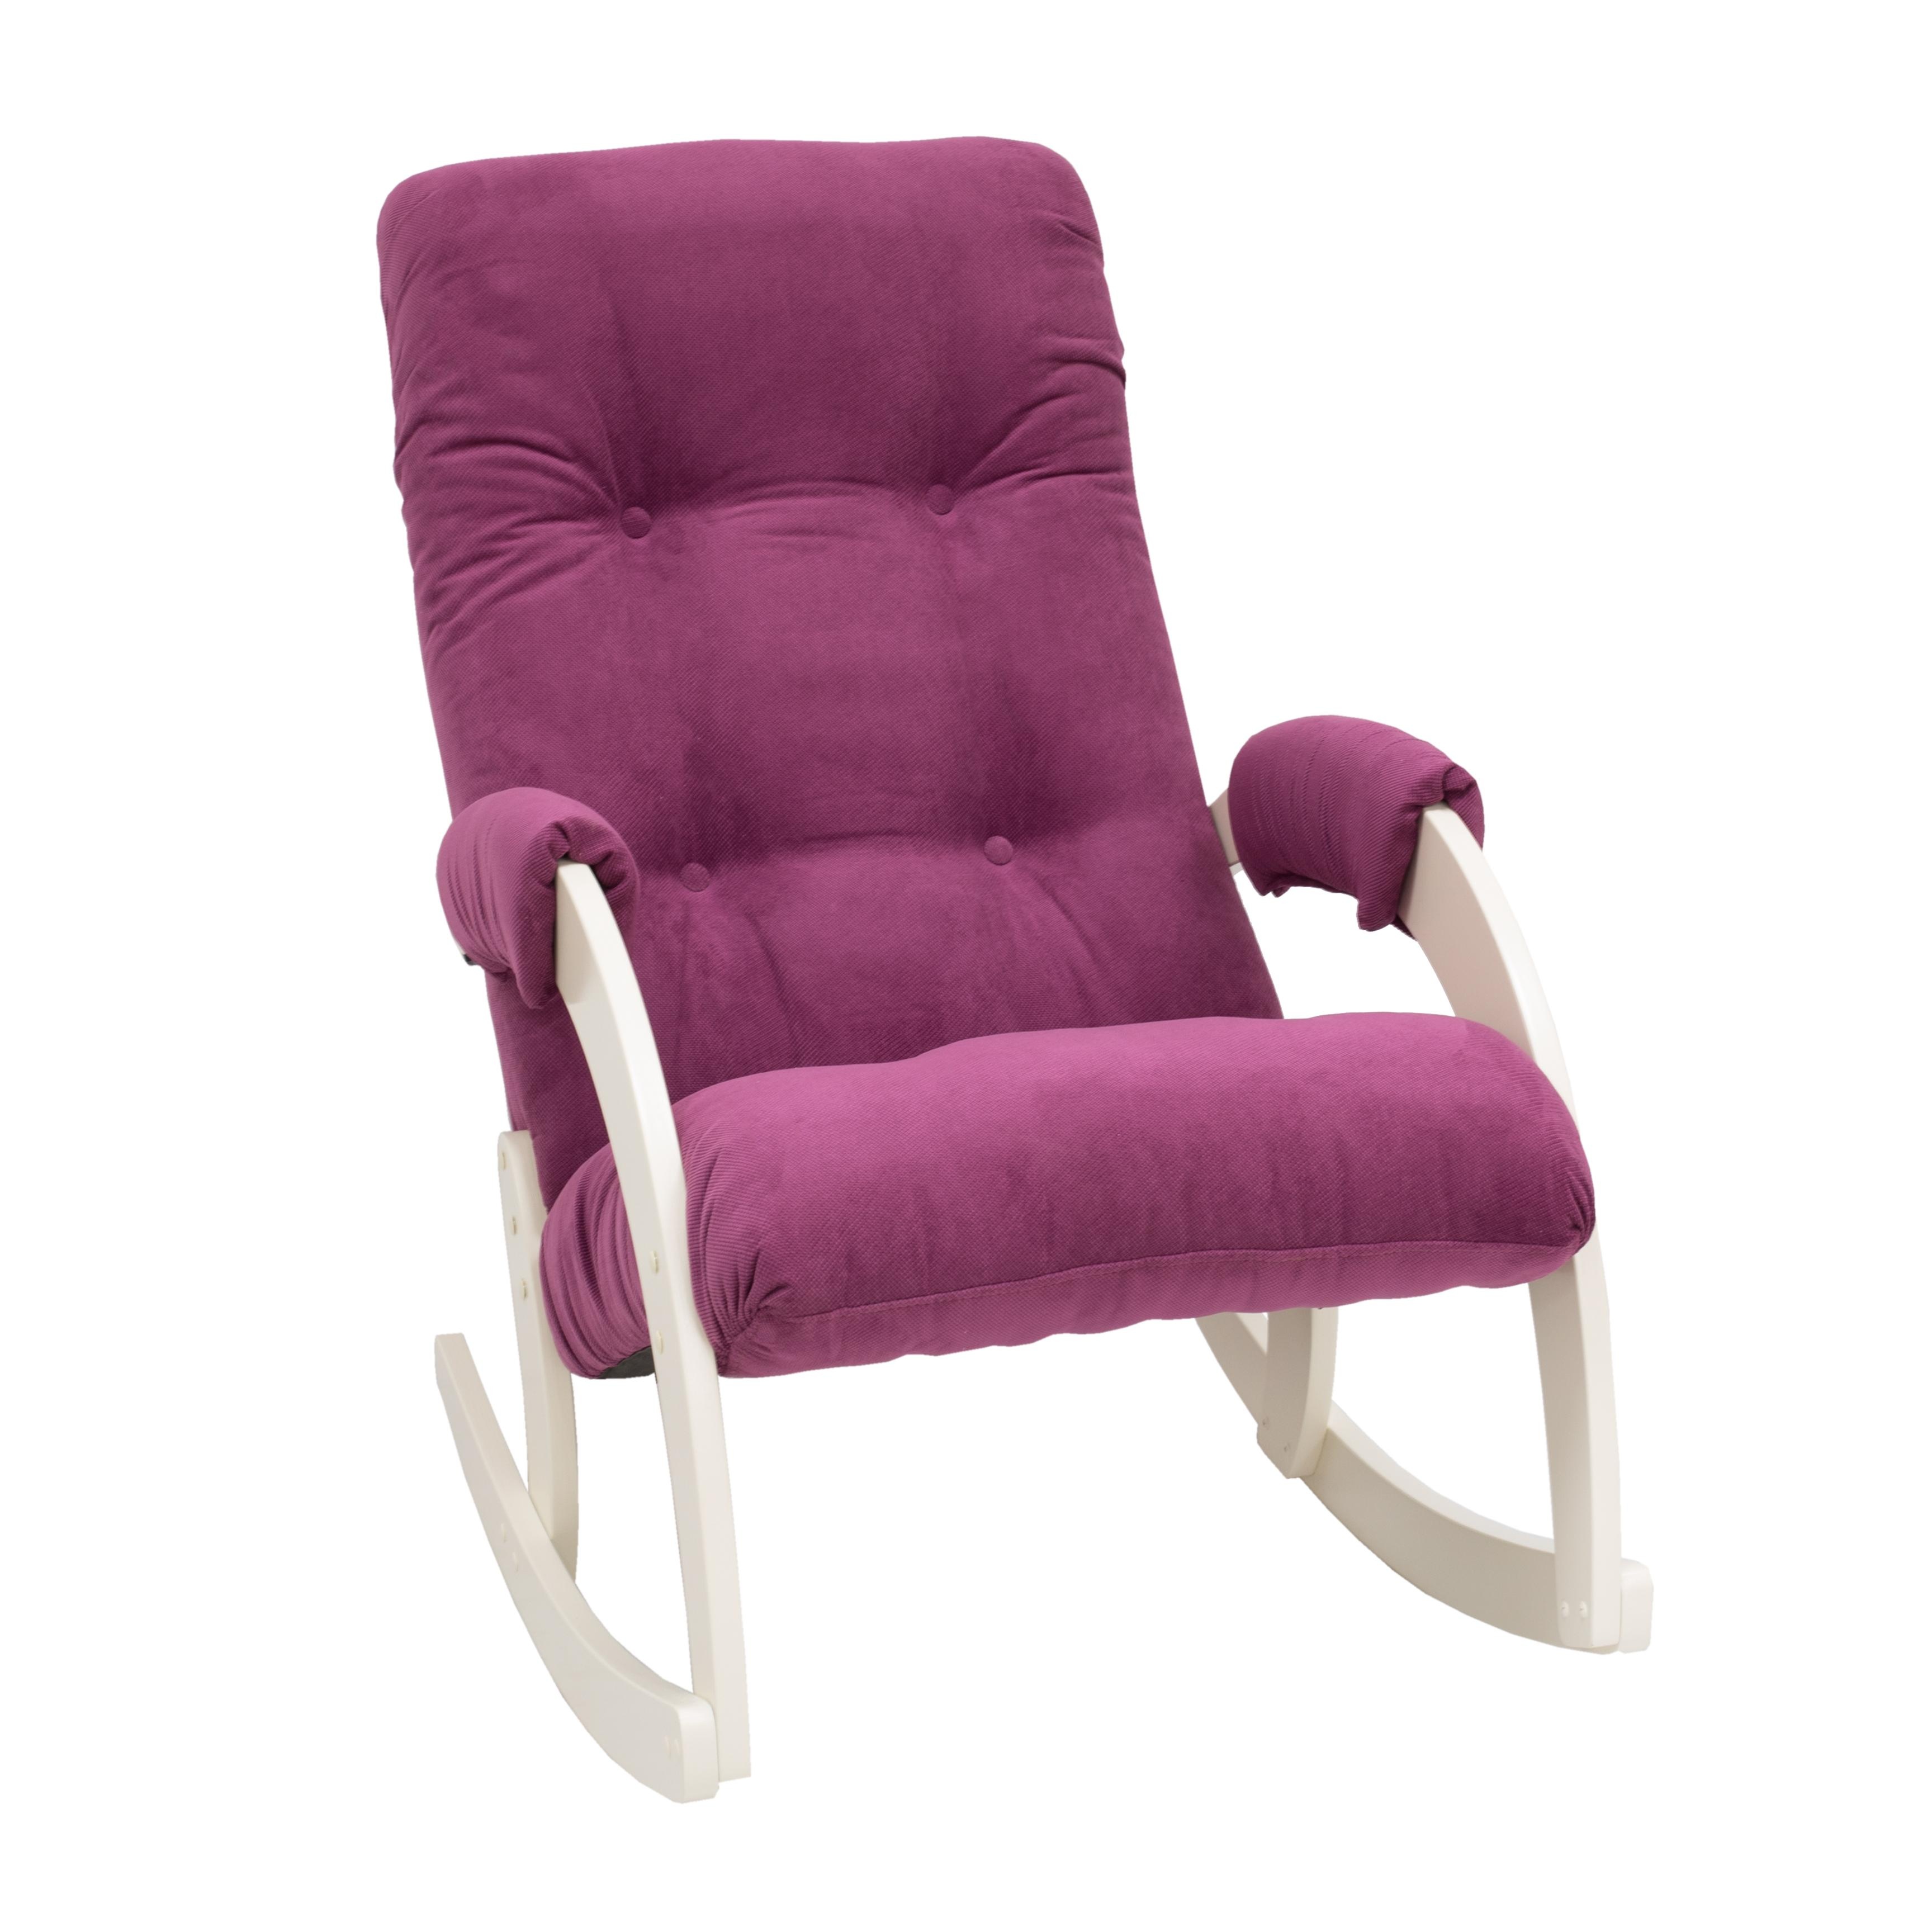 Кресло-качалка verona комфорт розовый 60x87x103 см.